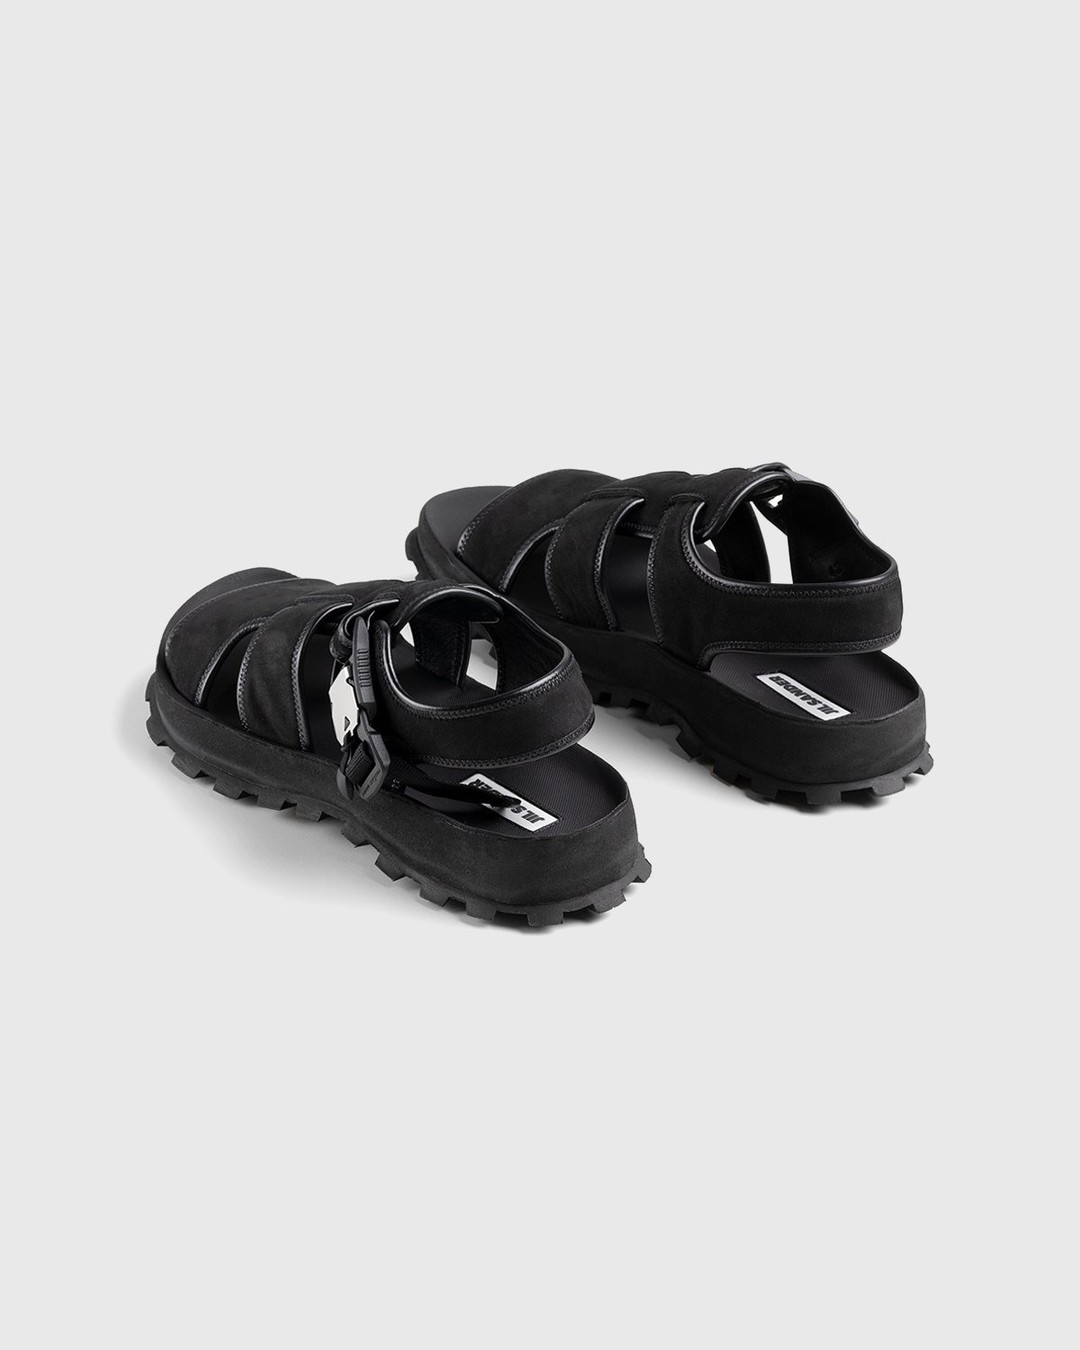 Jil Sander – Calfskin Leather Sandal Black - Sandals - Black - Image 3